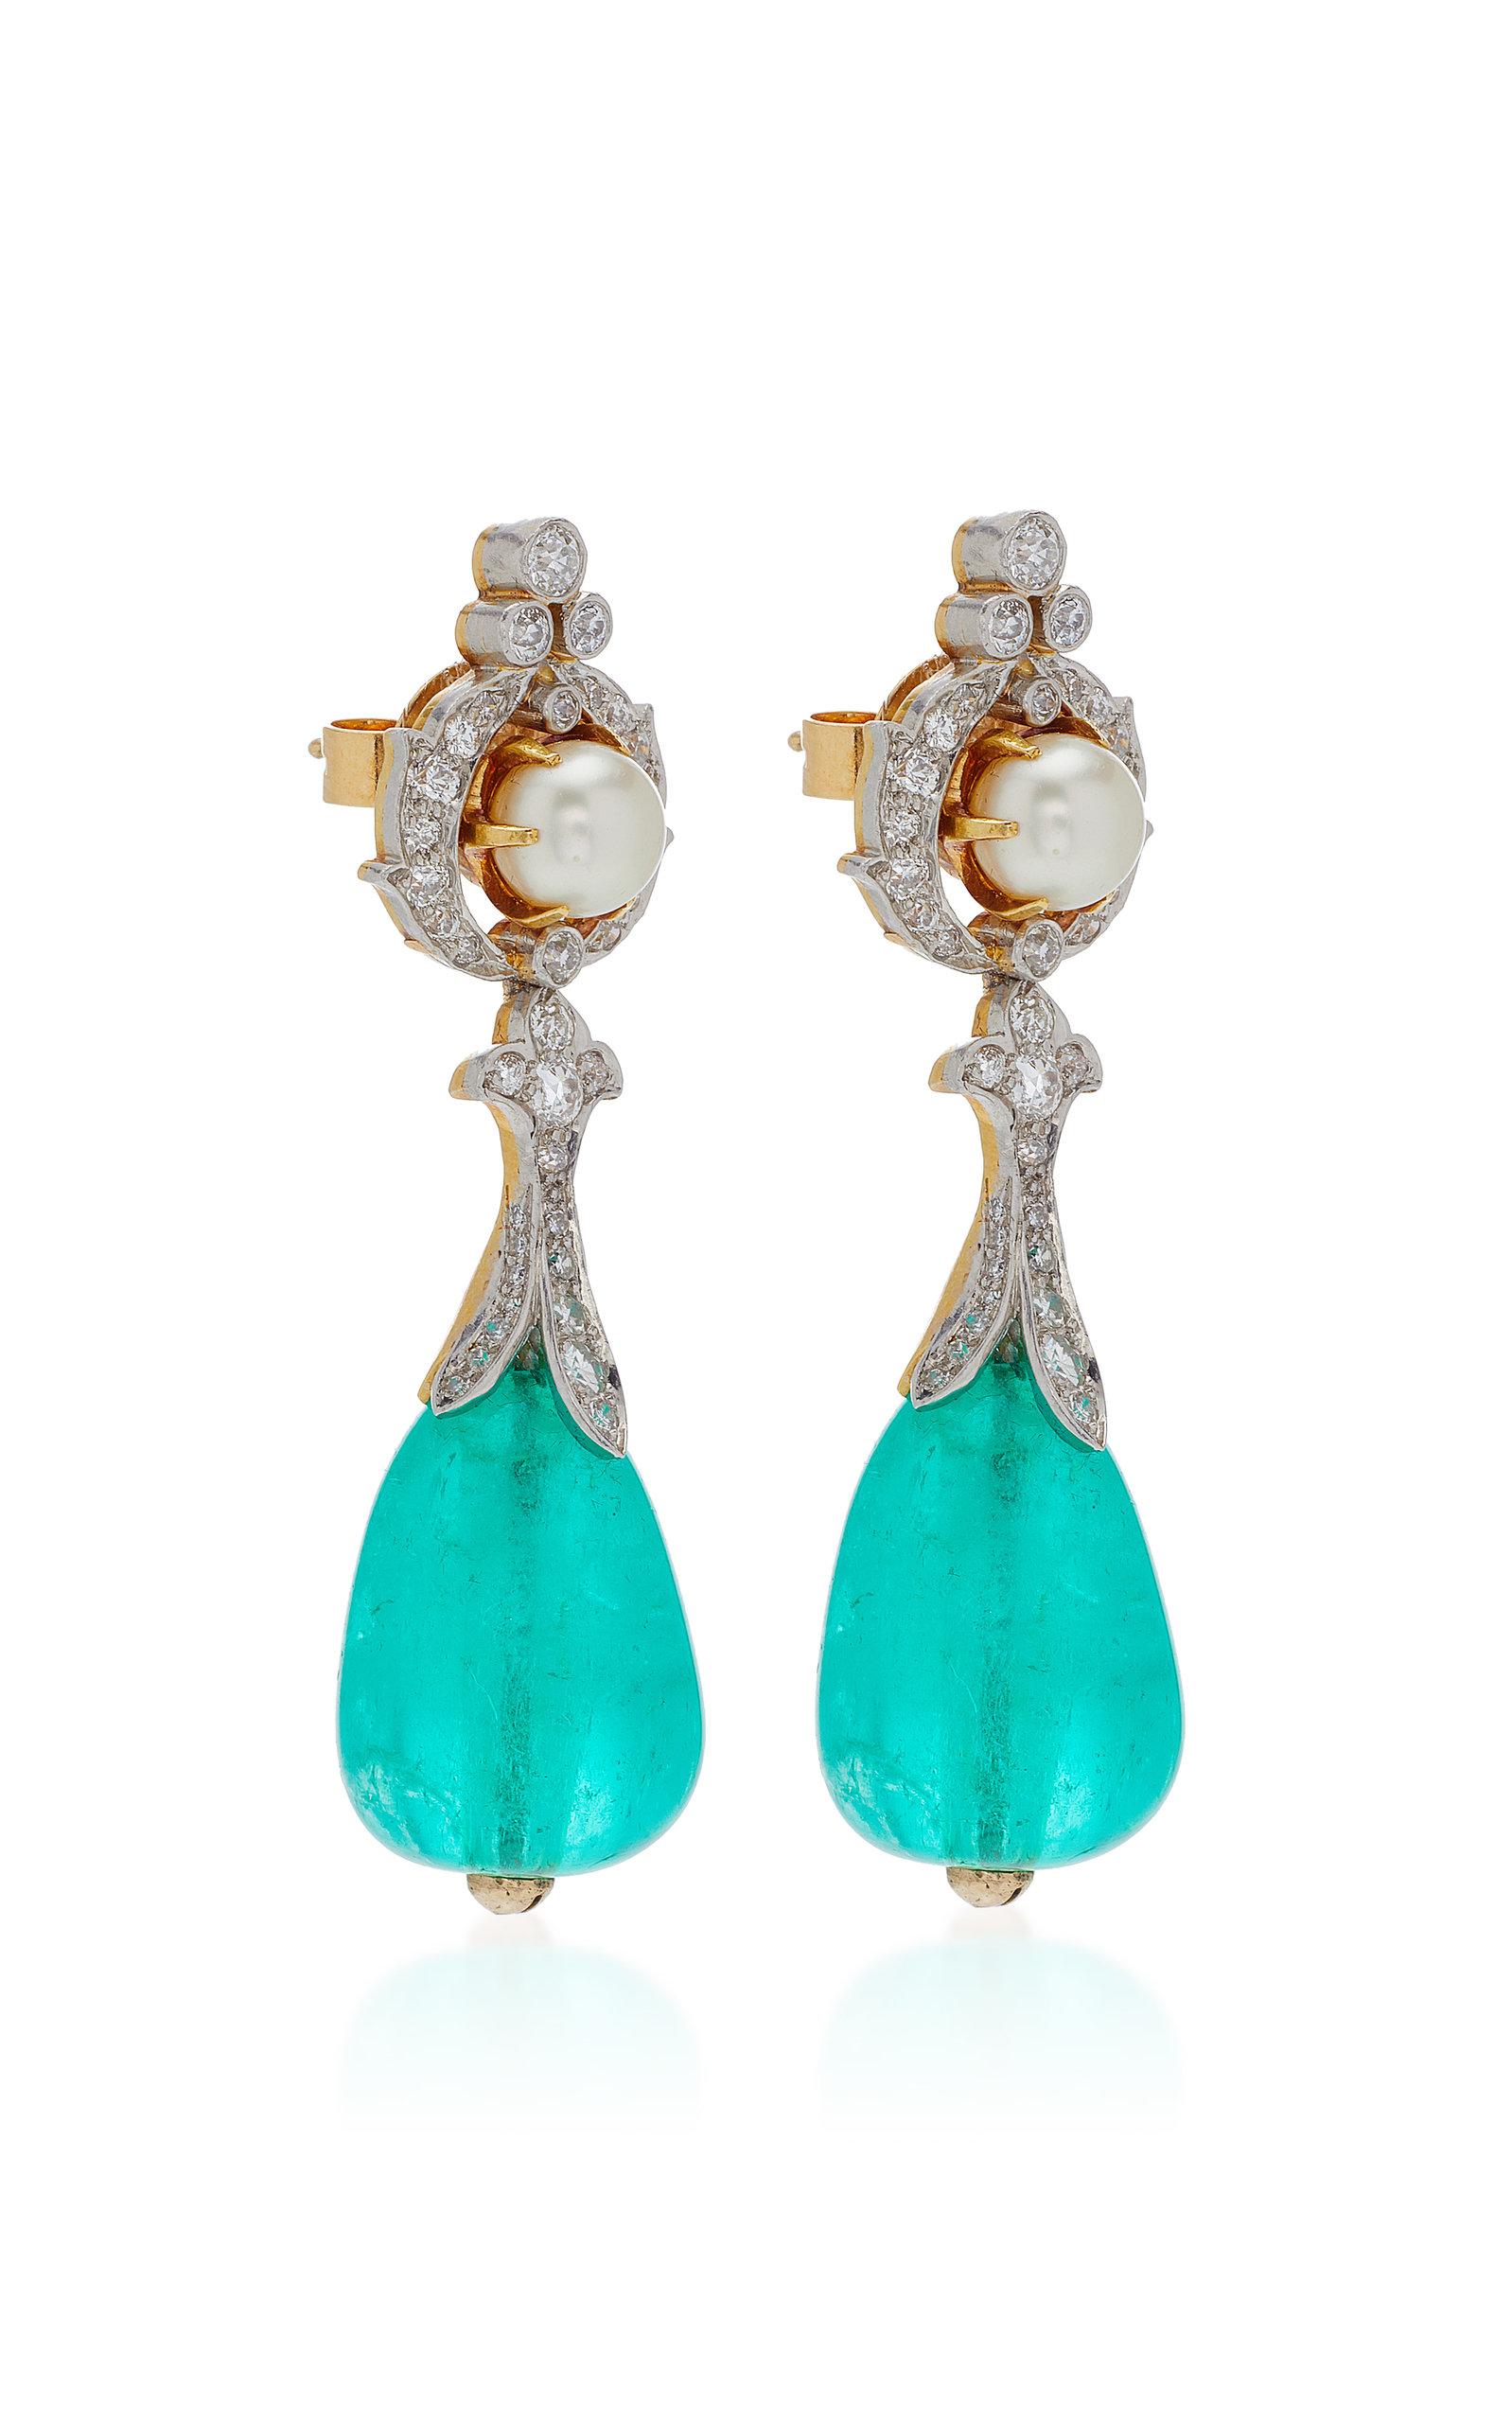 Antique Emerald Natural Pearl Diamonds Ear Pendants (Belle Époque)